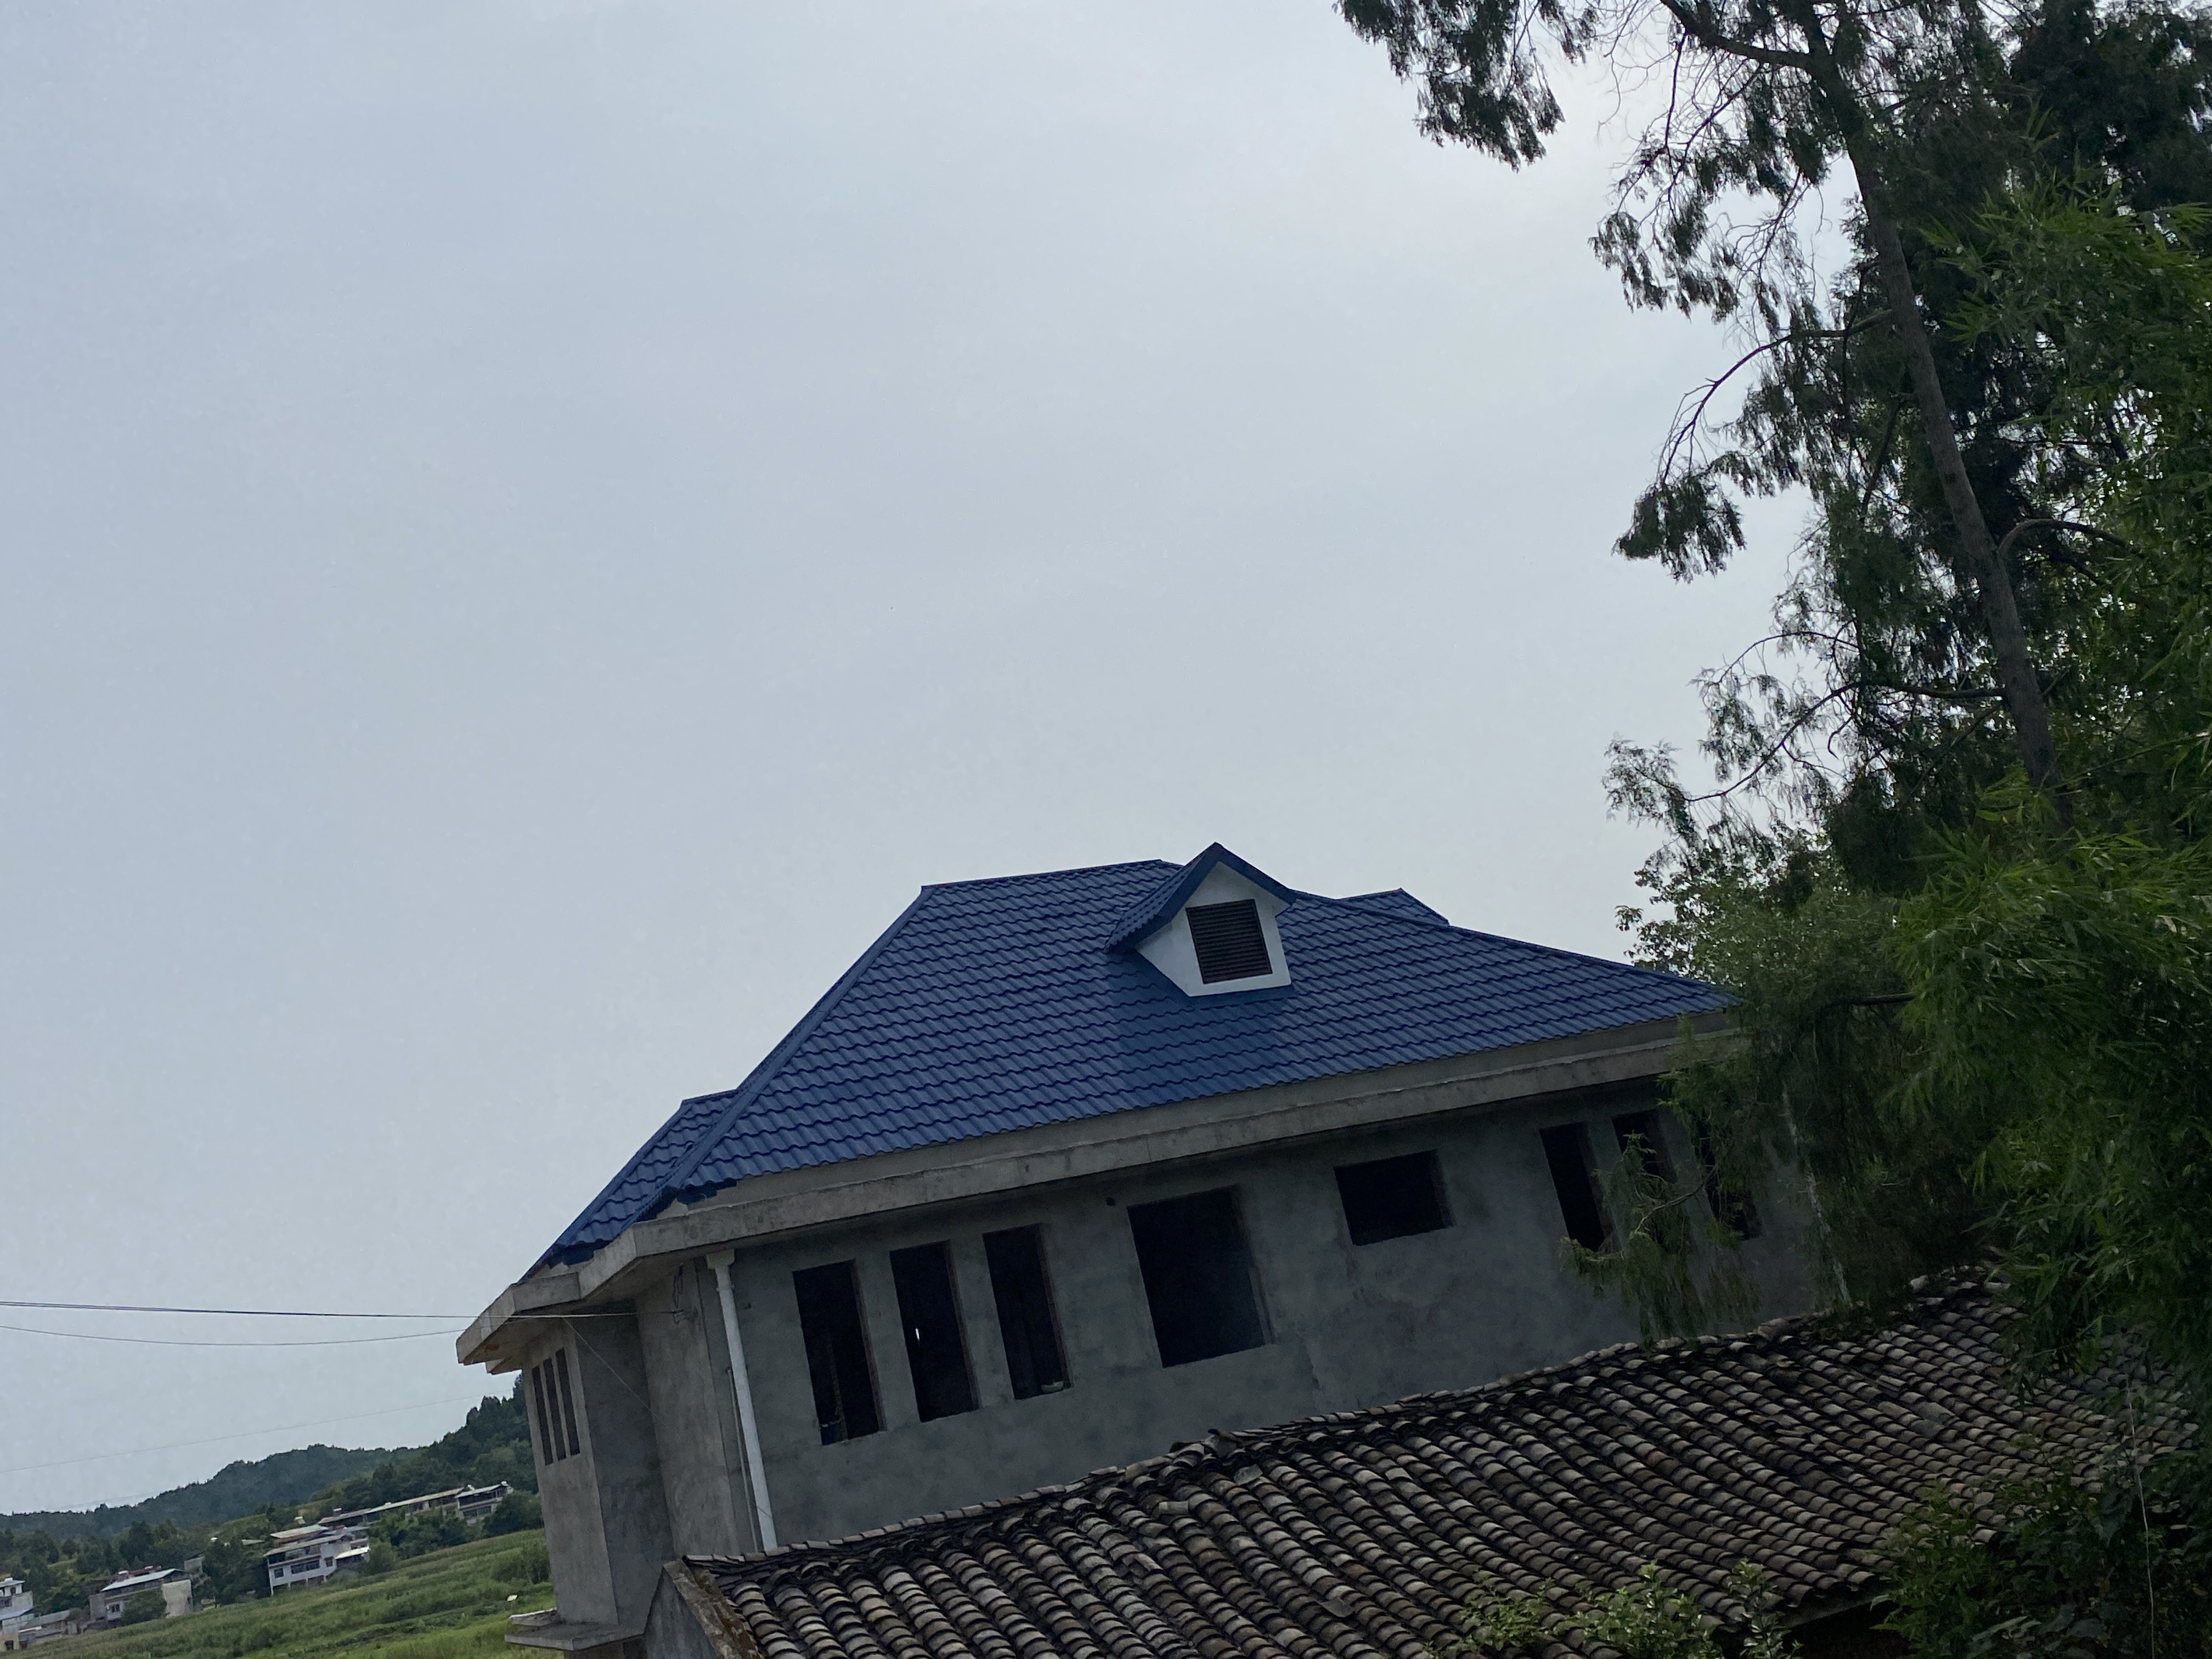 屋顶样式